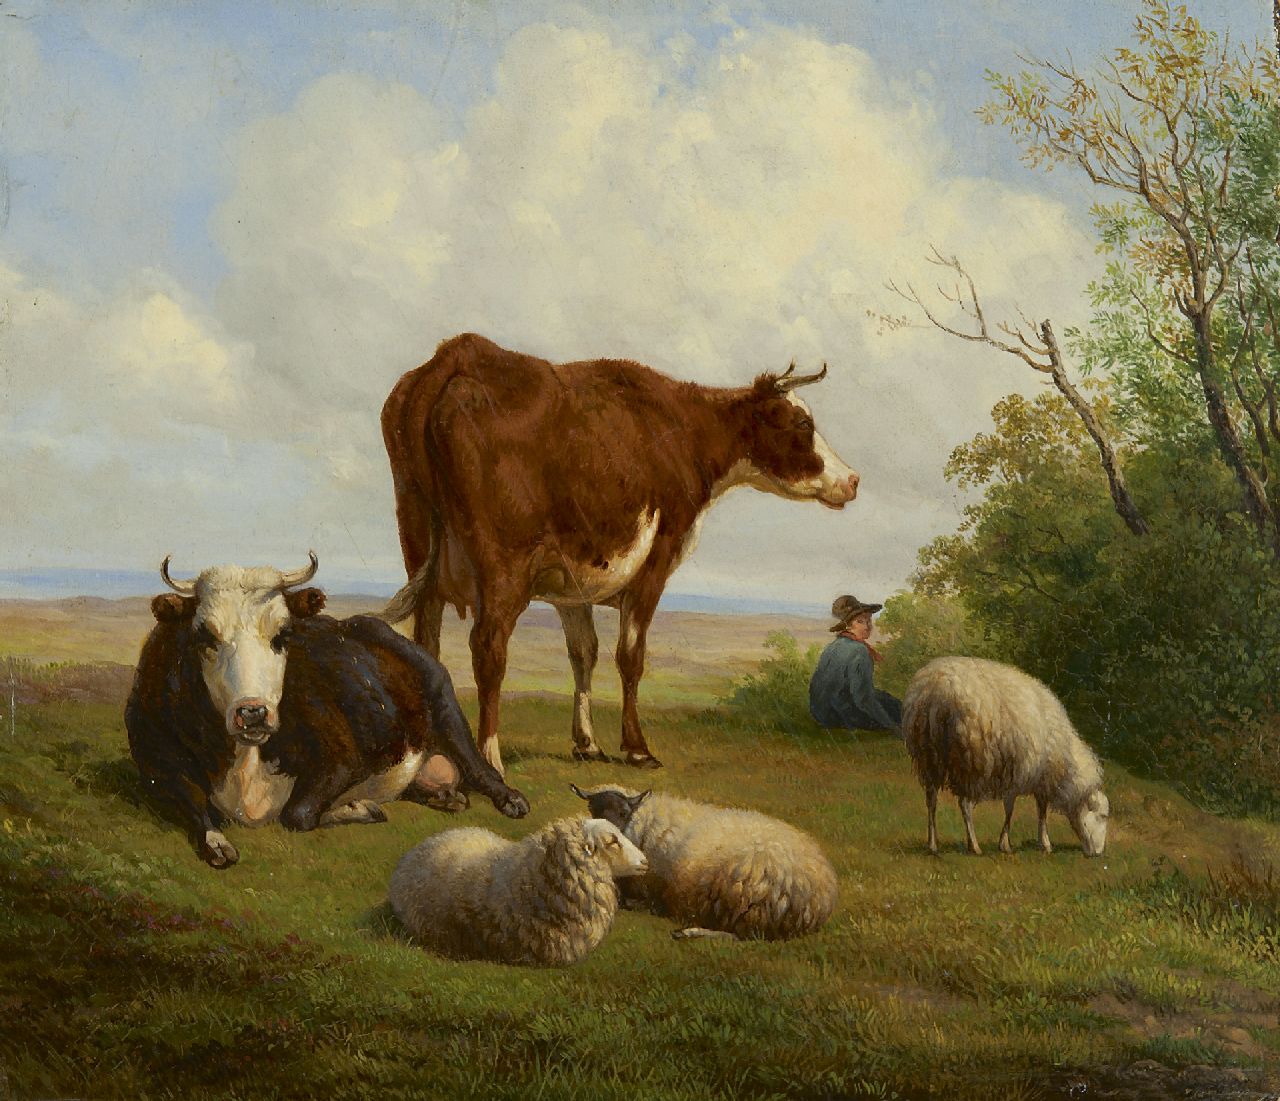 Sande Bakhuyzen H. van de | Hendrikus van de Sande Bakhuyzen, A summer landscape with cowherd and cattle, oil on panel 26.2 x 30.1 cm